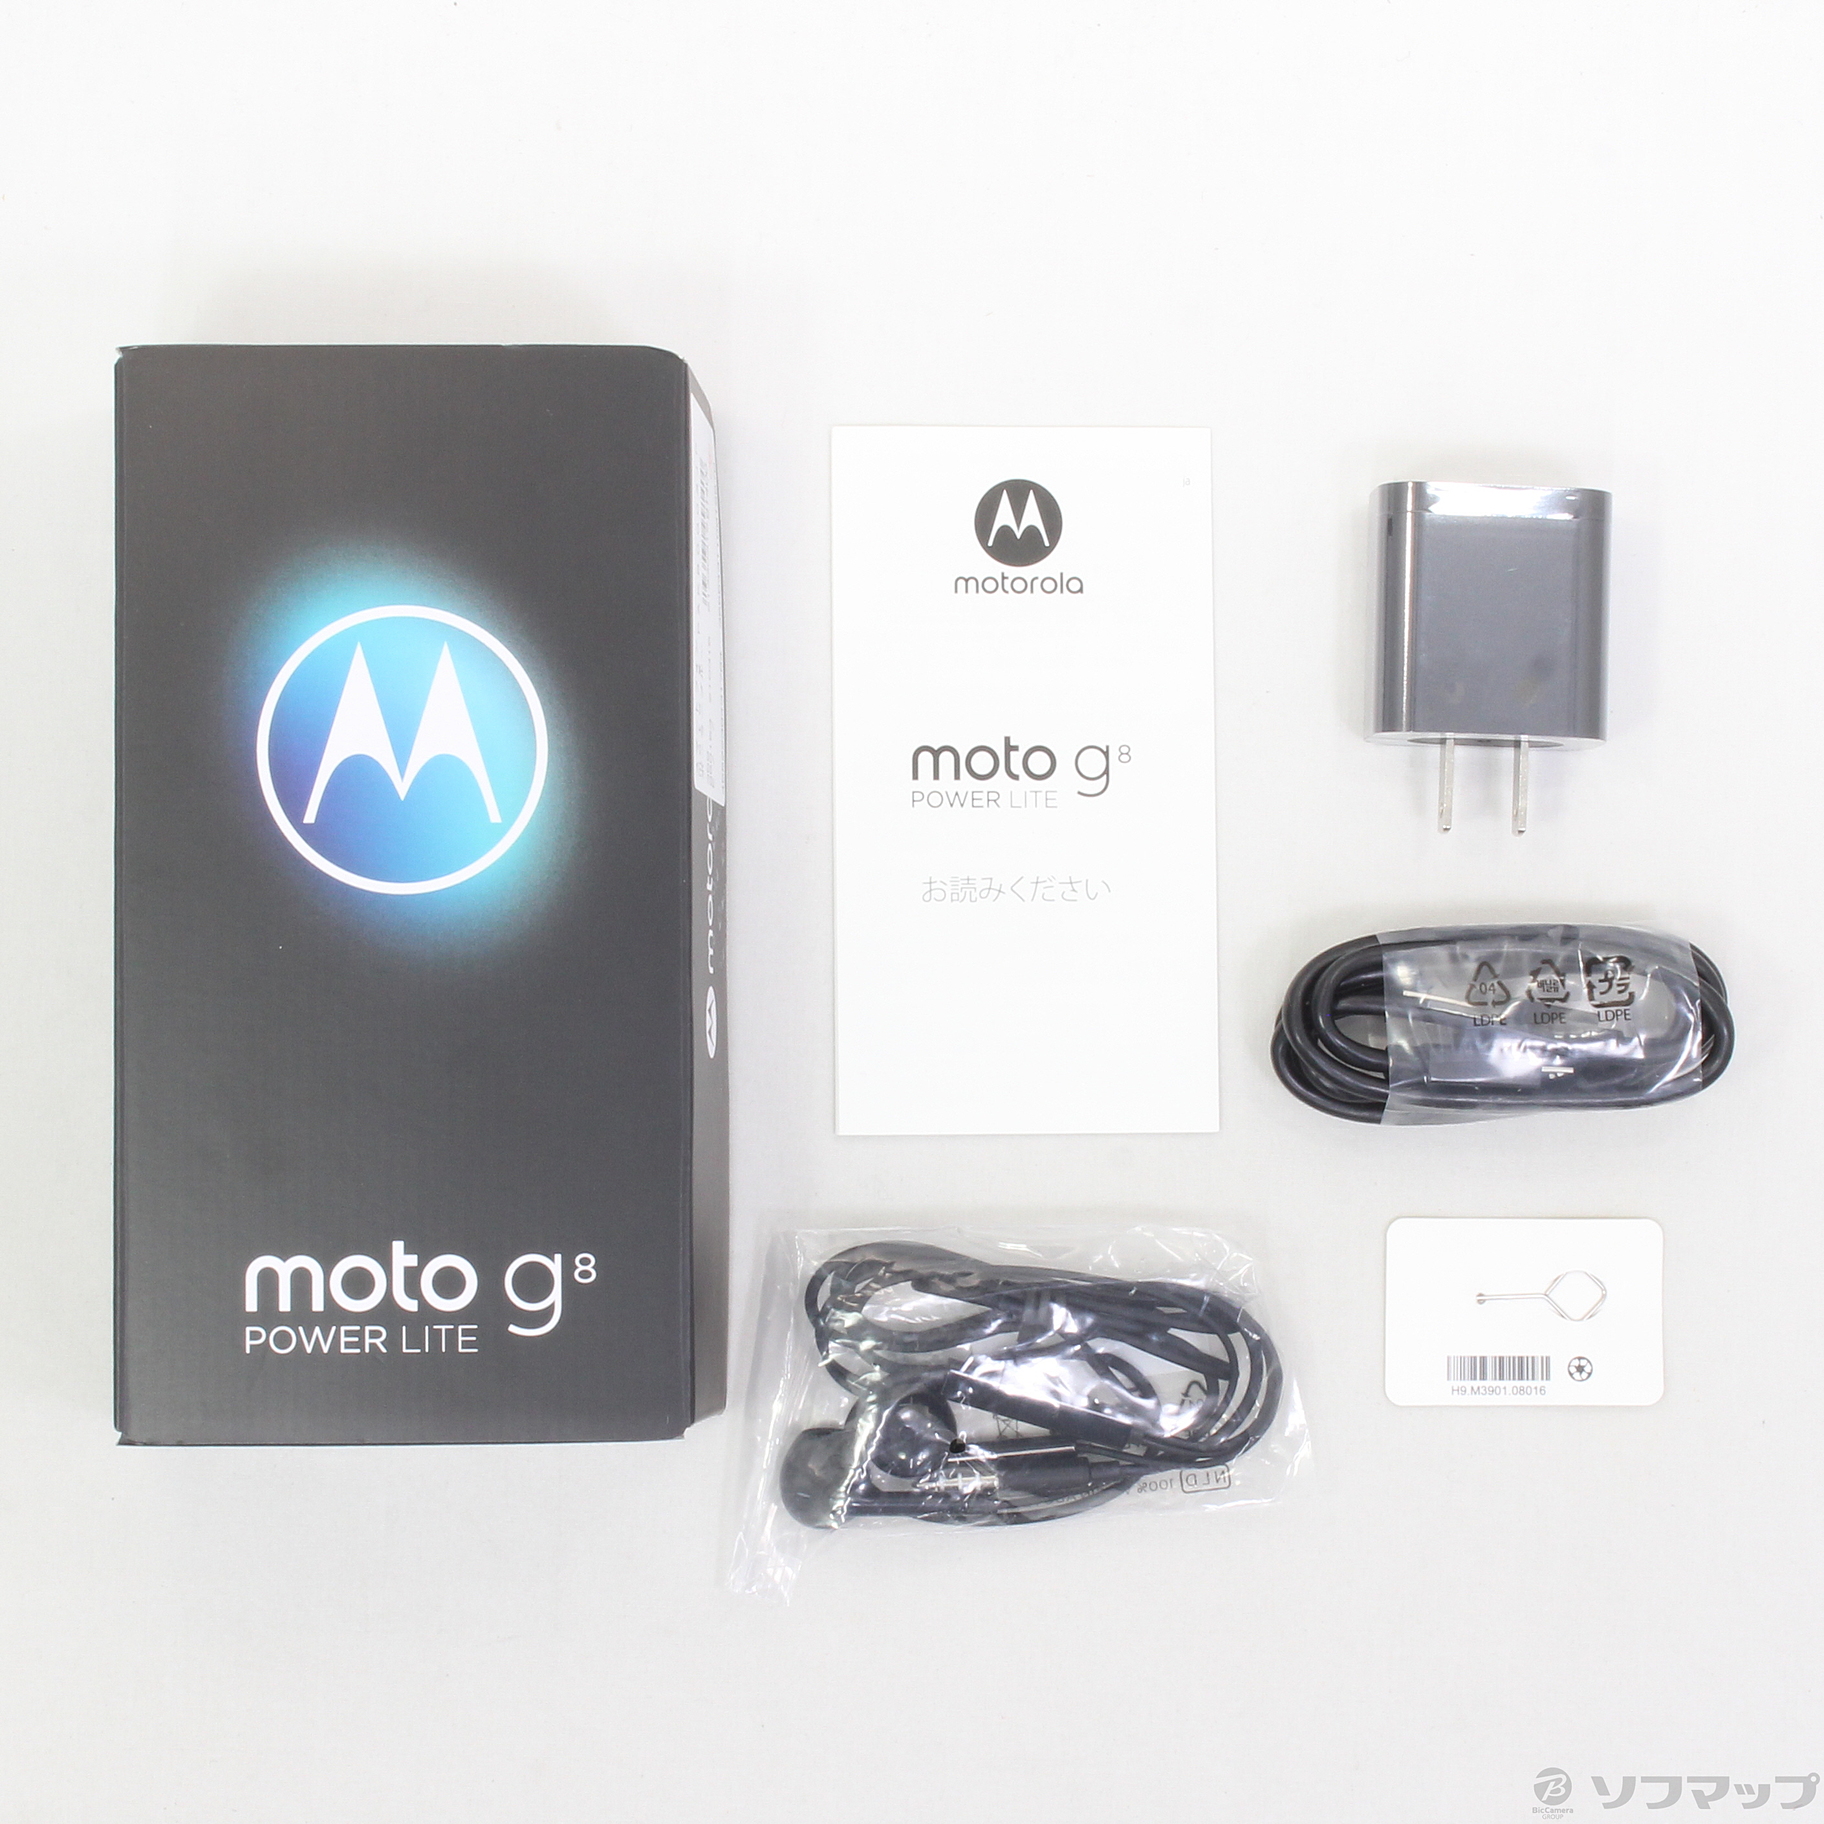 中古】Moto G8 power lite 64GB ポーラブルー XT2055-4 SIMフリー ...